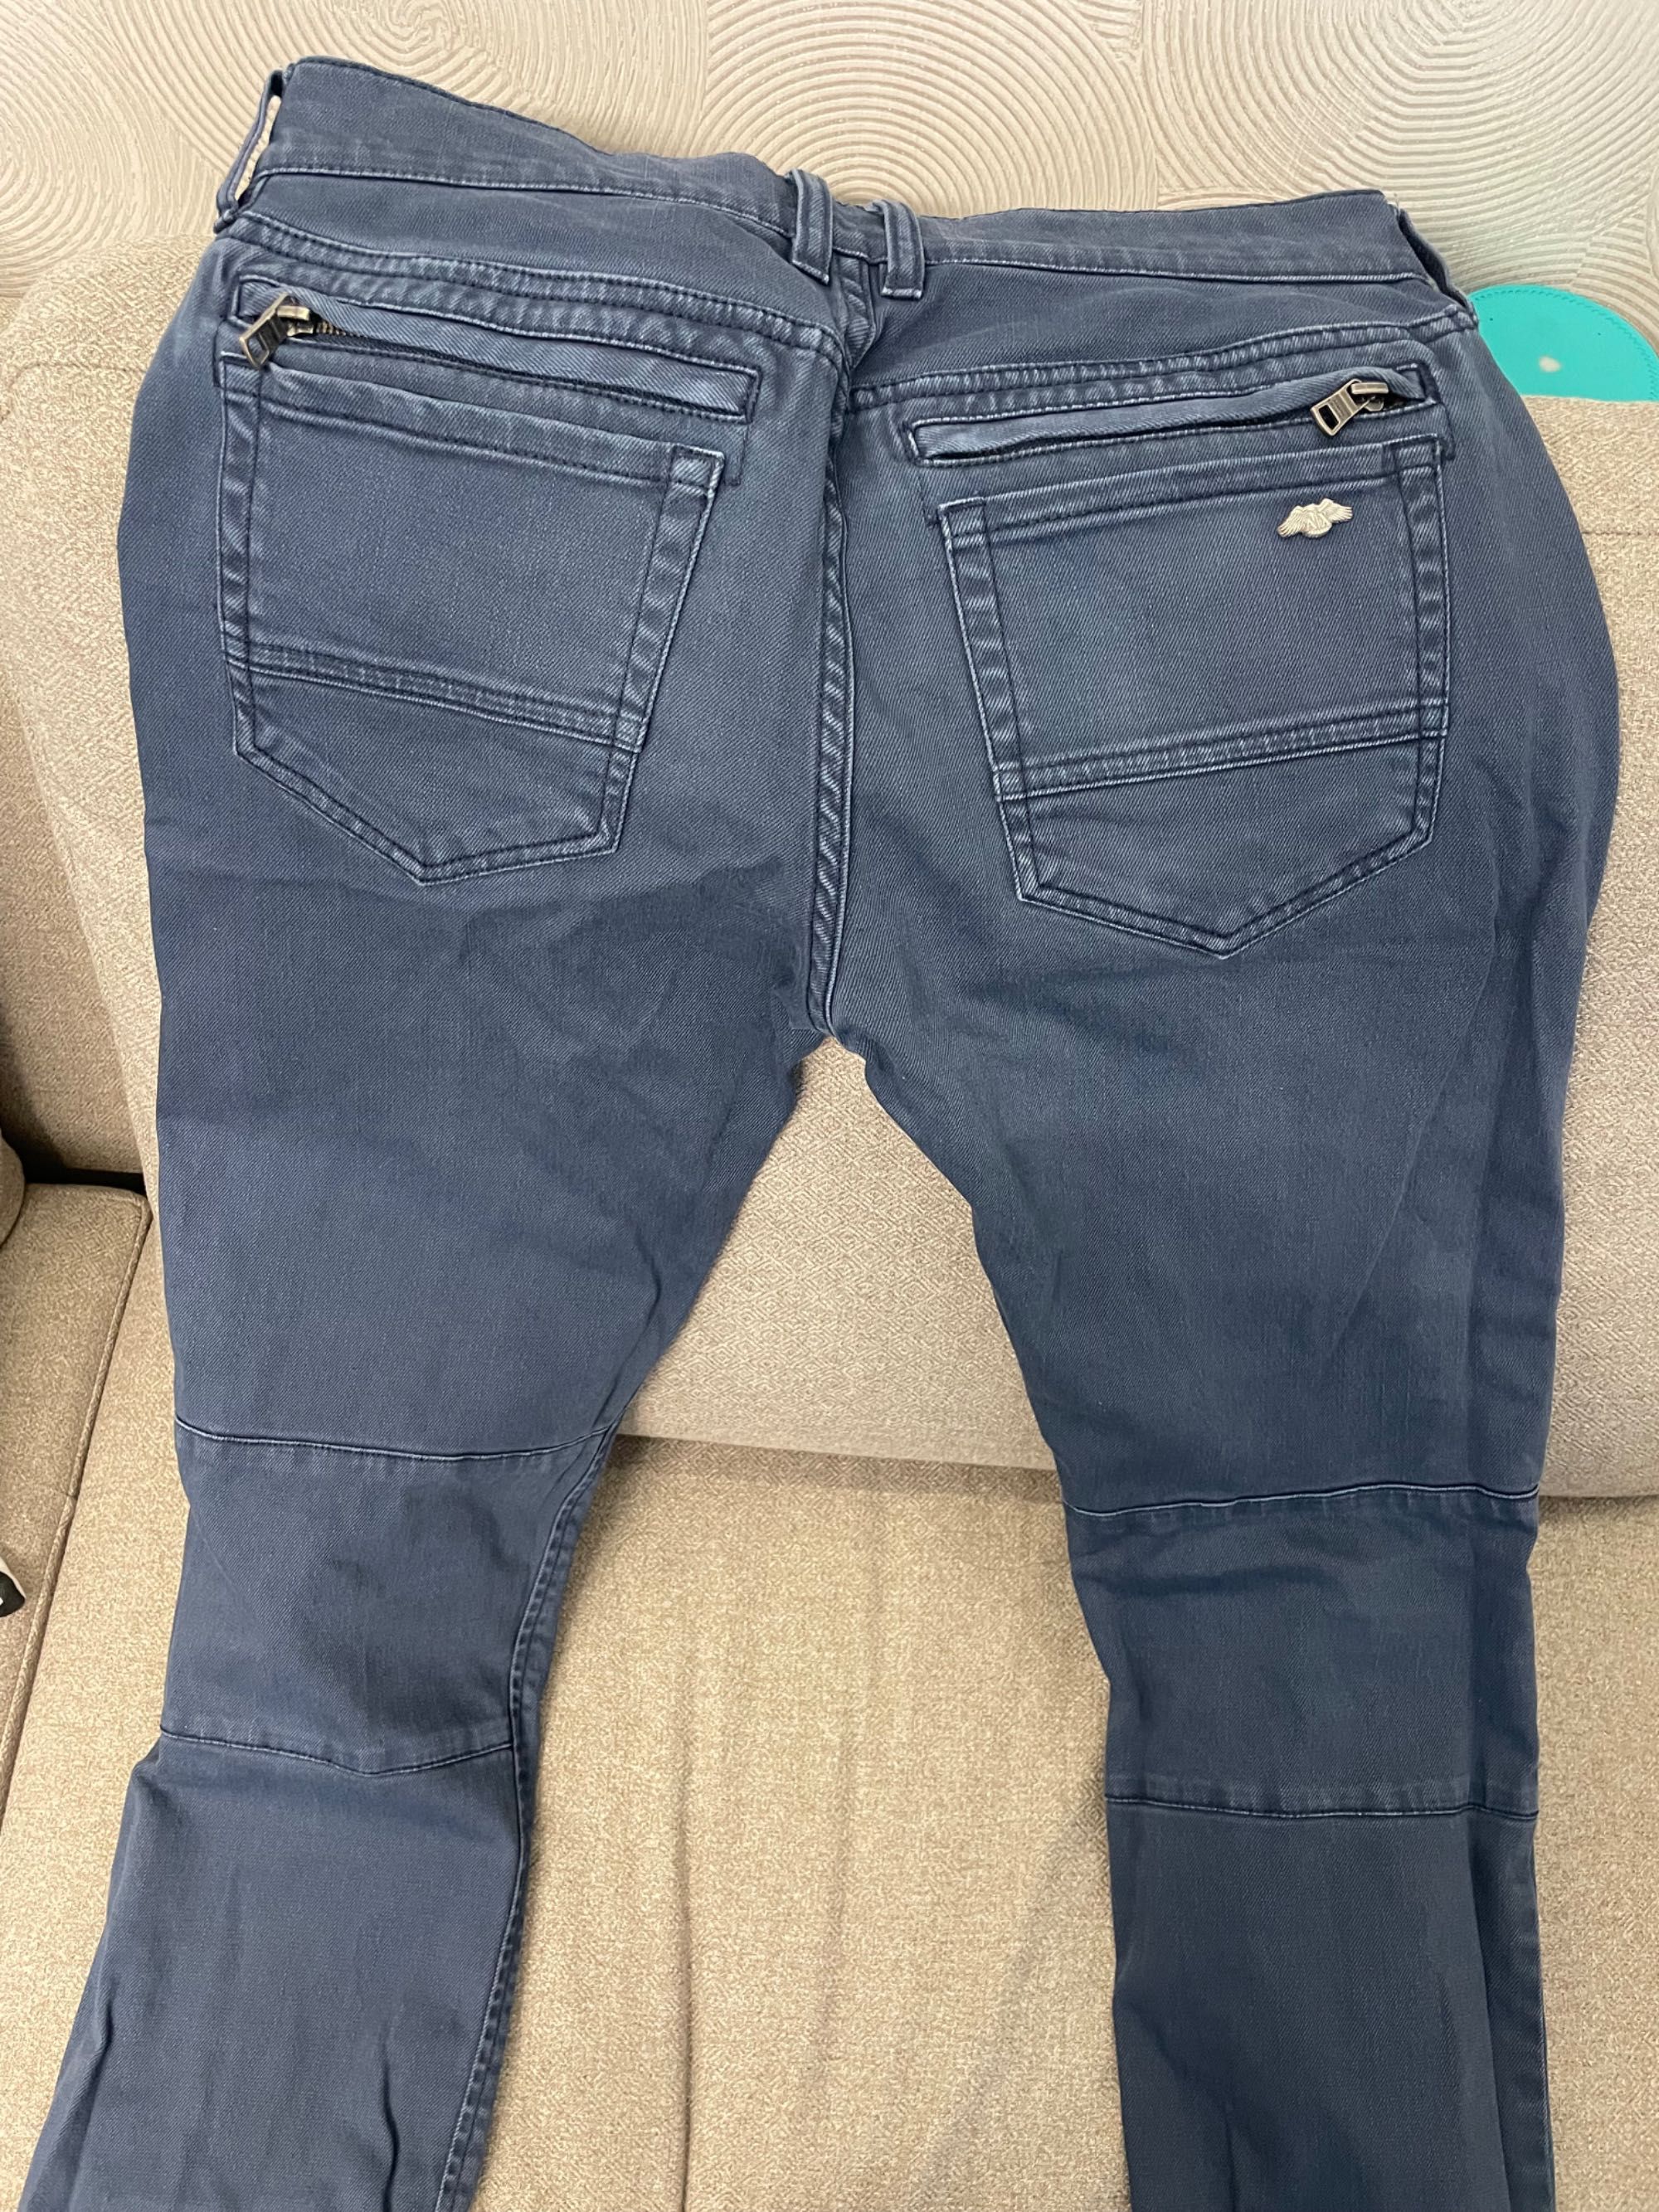 Мужские джинсы от Armani Exchange, 28 размер. Покупали в Нью-Йорке.